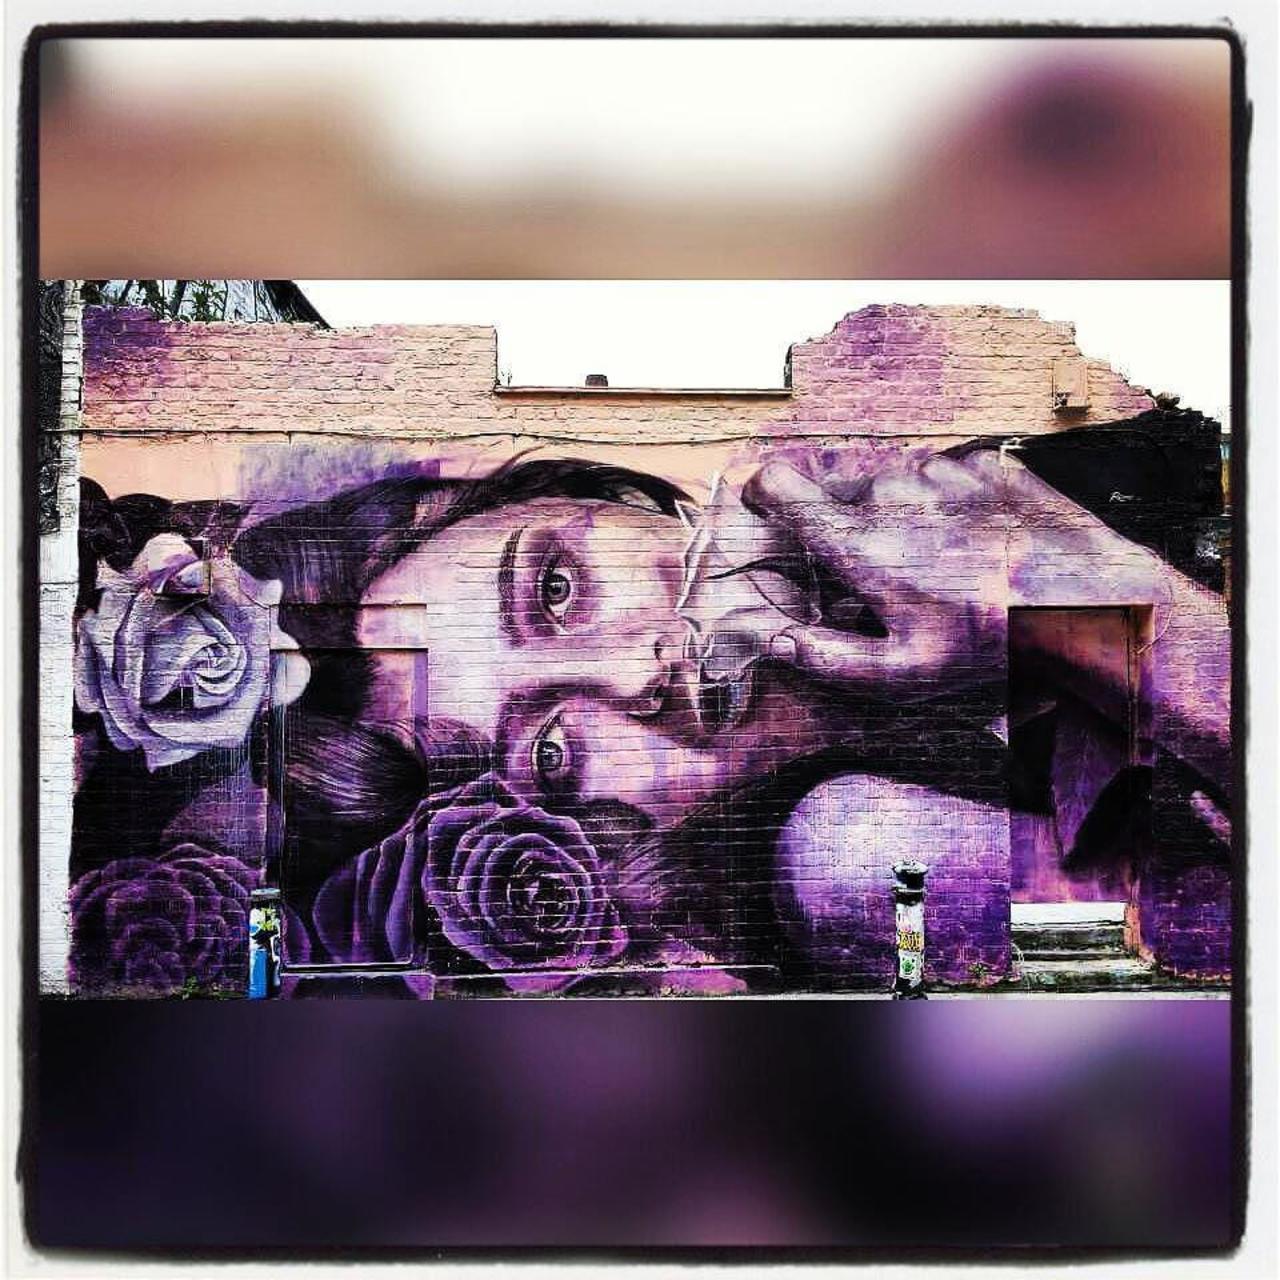 RT @StArtEverywhere: #streetart #london #rone #girl #purple #rose #england #londonstreetart #street #art #streetartlondon #graffiti #ste… http://t.co/gB1D3MRlvm